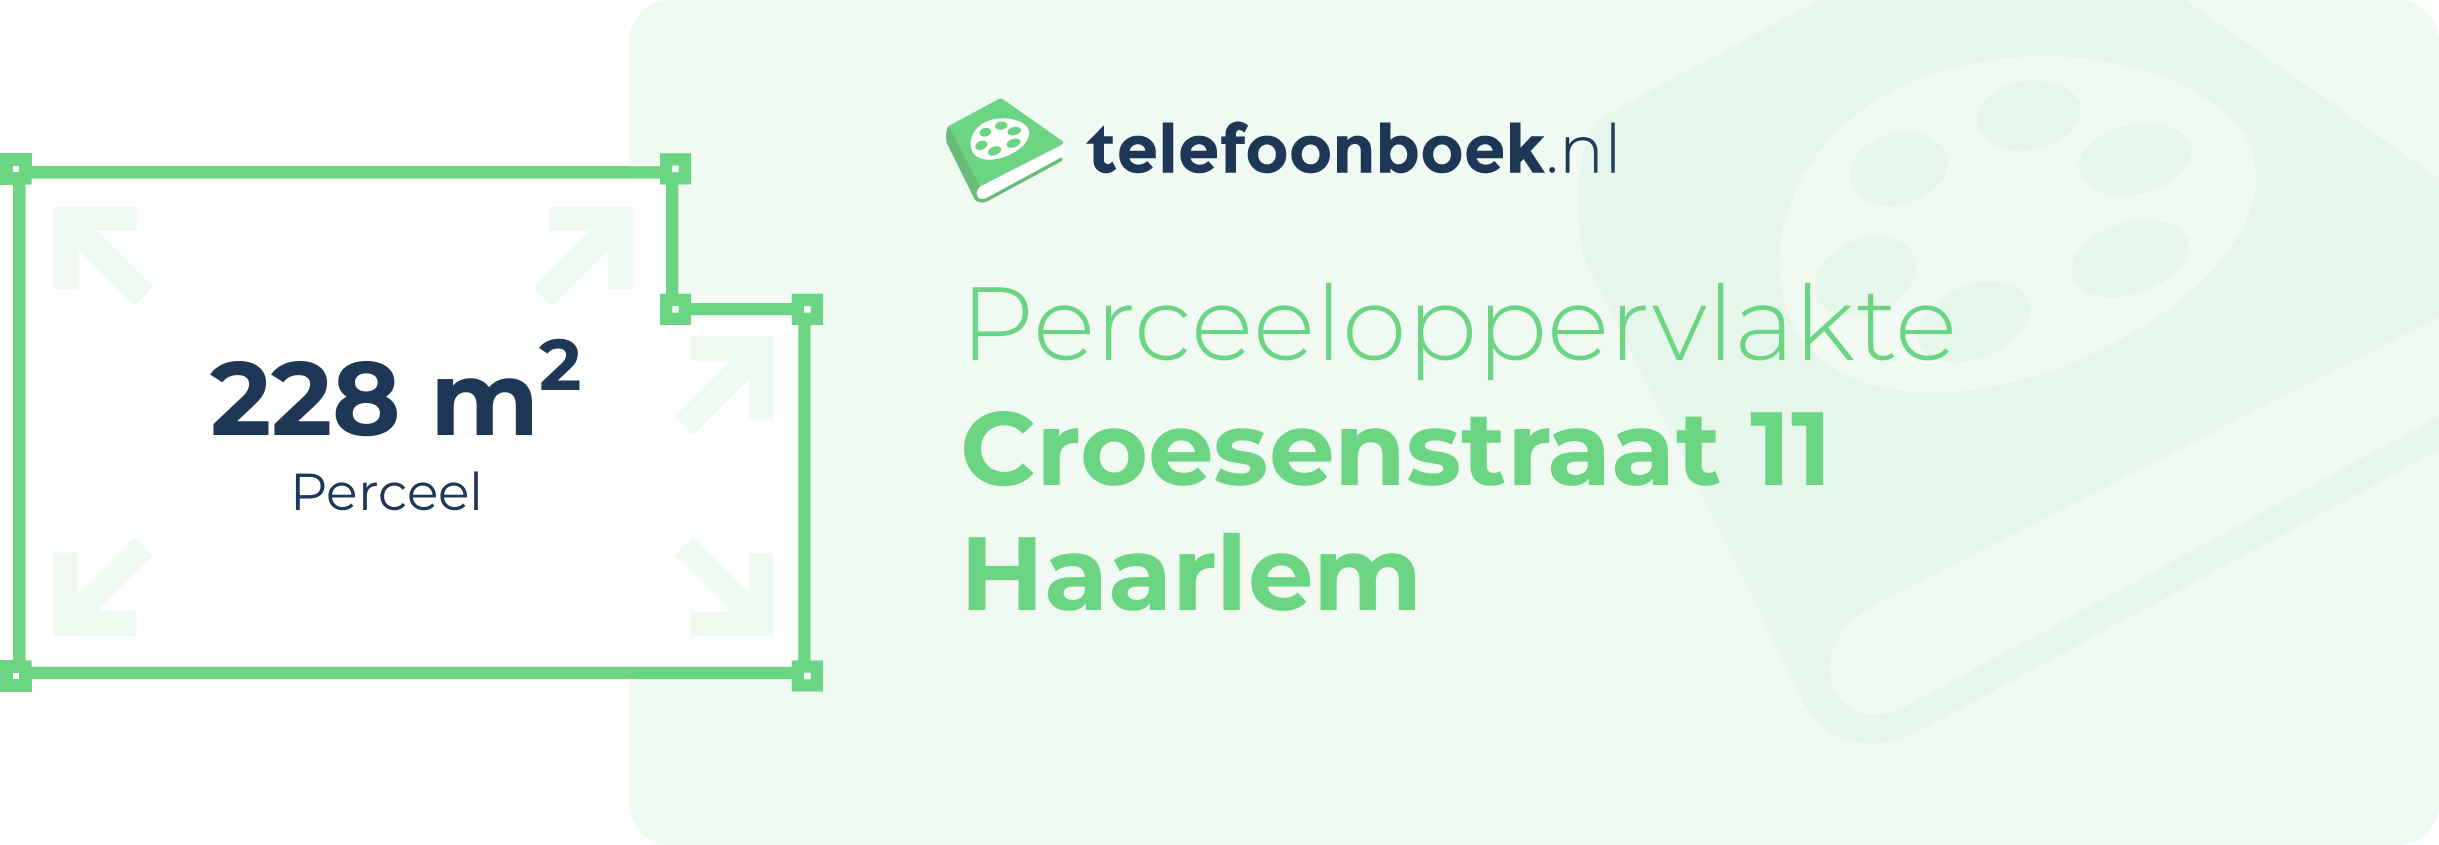 Perceeloppervlakte Croesenstraat 11 Haarlem